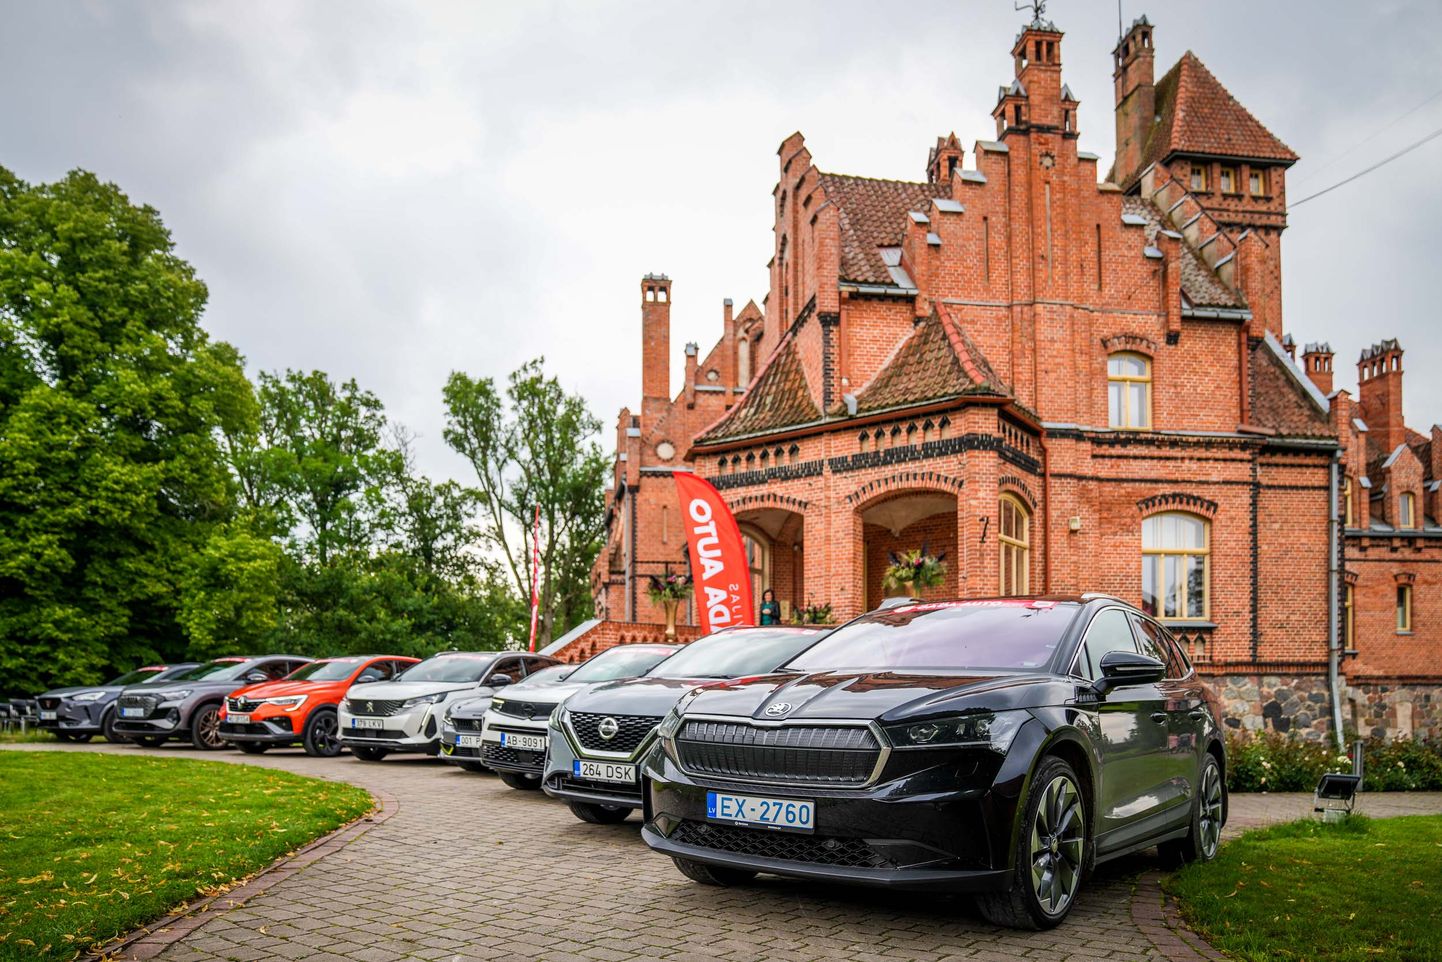 Latvijas Gada auto 2022 žūrijas brauciens uz Jaumoku pili